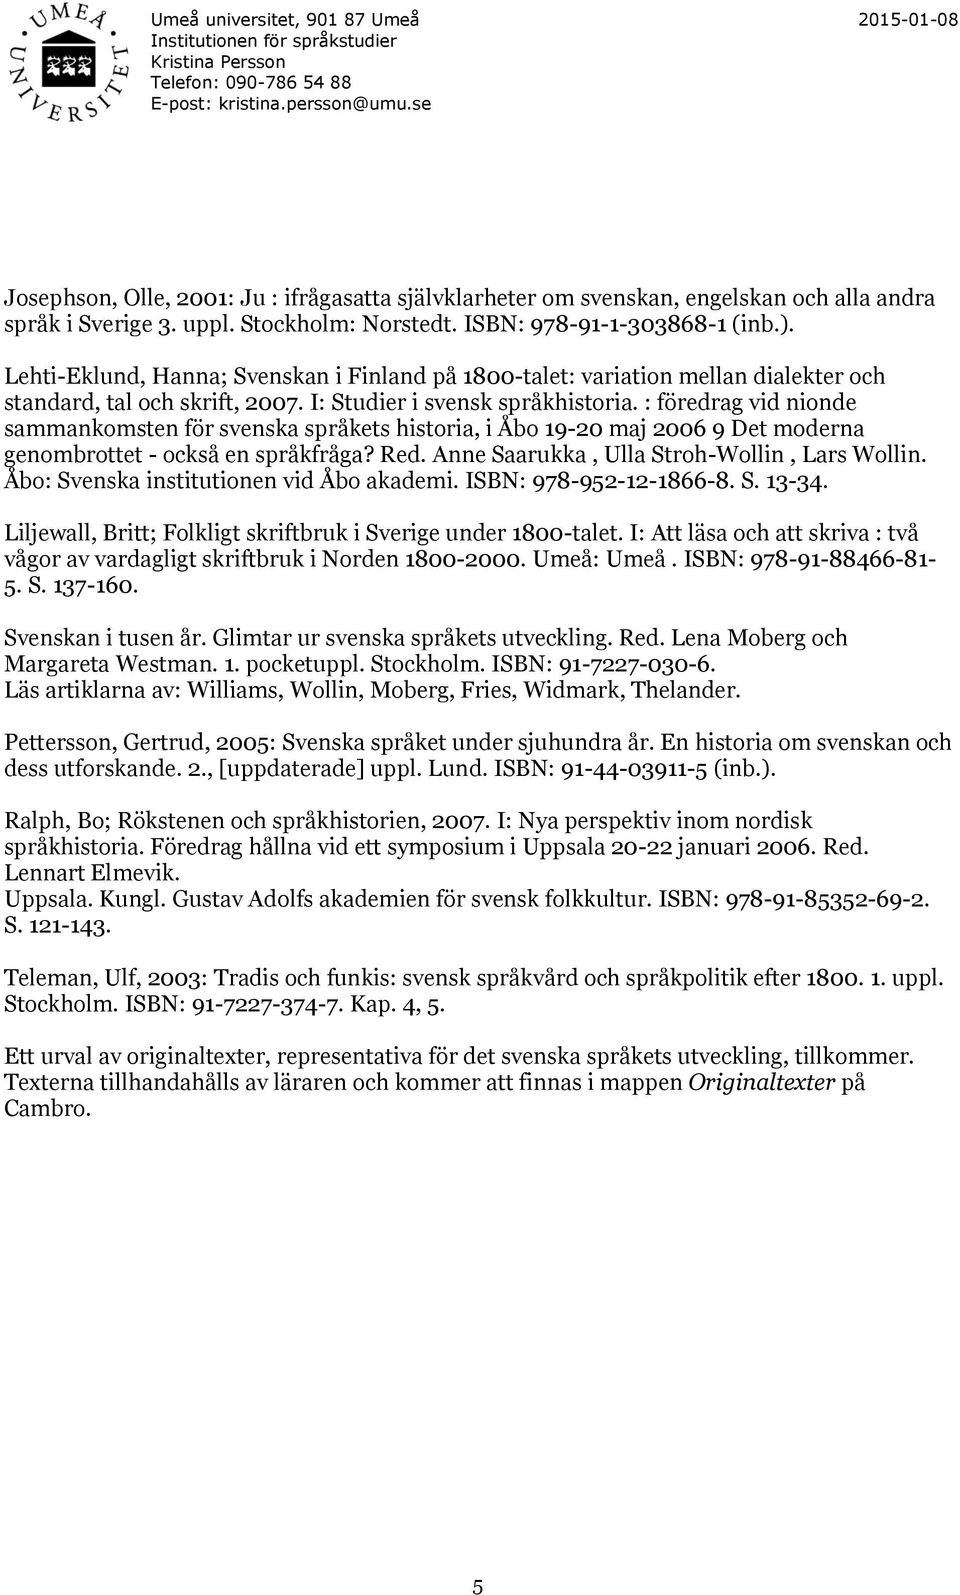 : föredrag vid nionde sammankomsten för svenska språkets historia, i Åbo 19-20 maj 2006 9 Det moderna genombrottet - också en språkfråga? Red. Anne Saarukka, Ulla Stroh-Wollin, Lars Wollin.